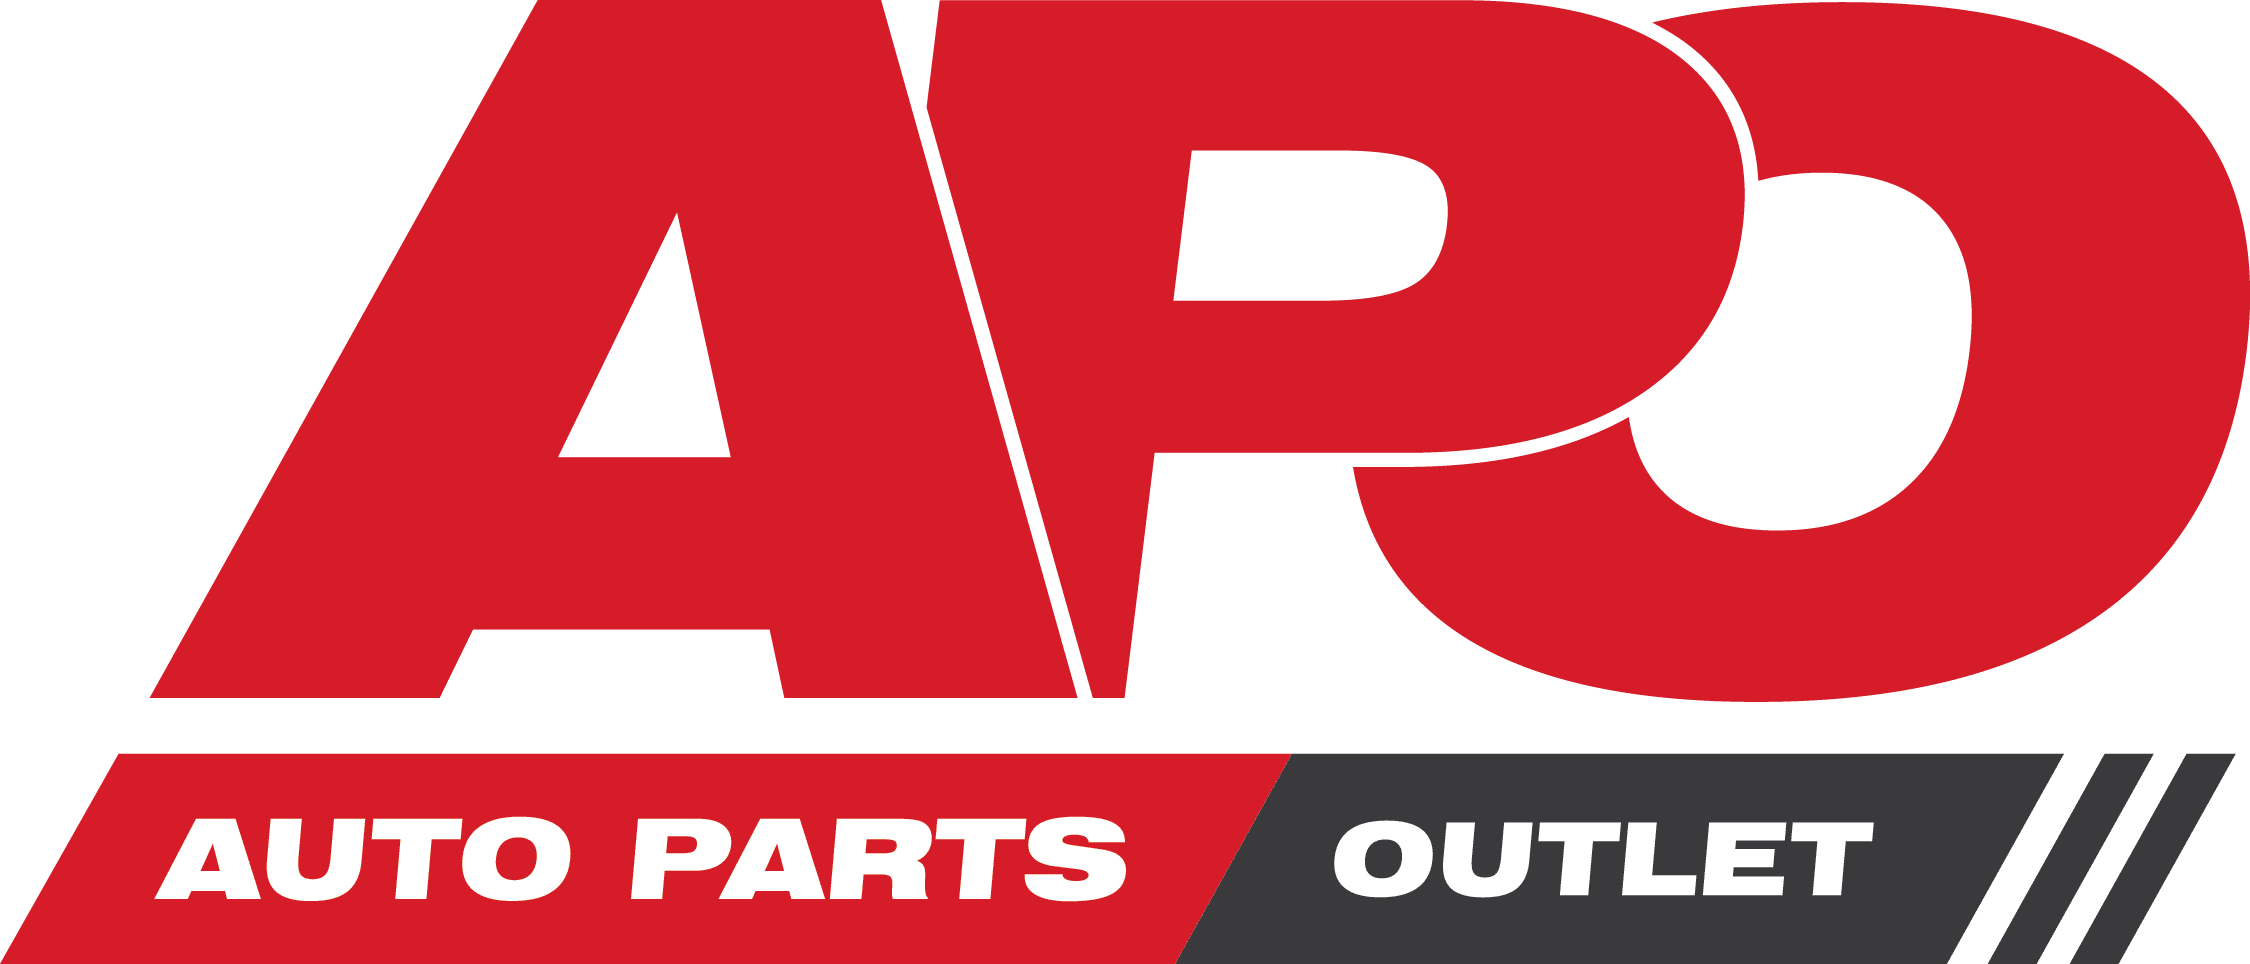 Auto Parts Outlet - LKQ